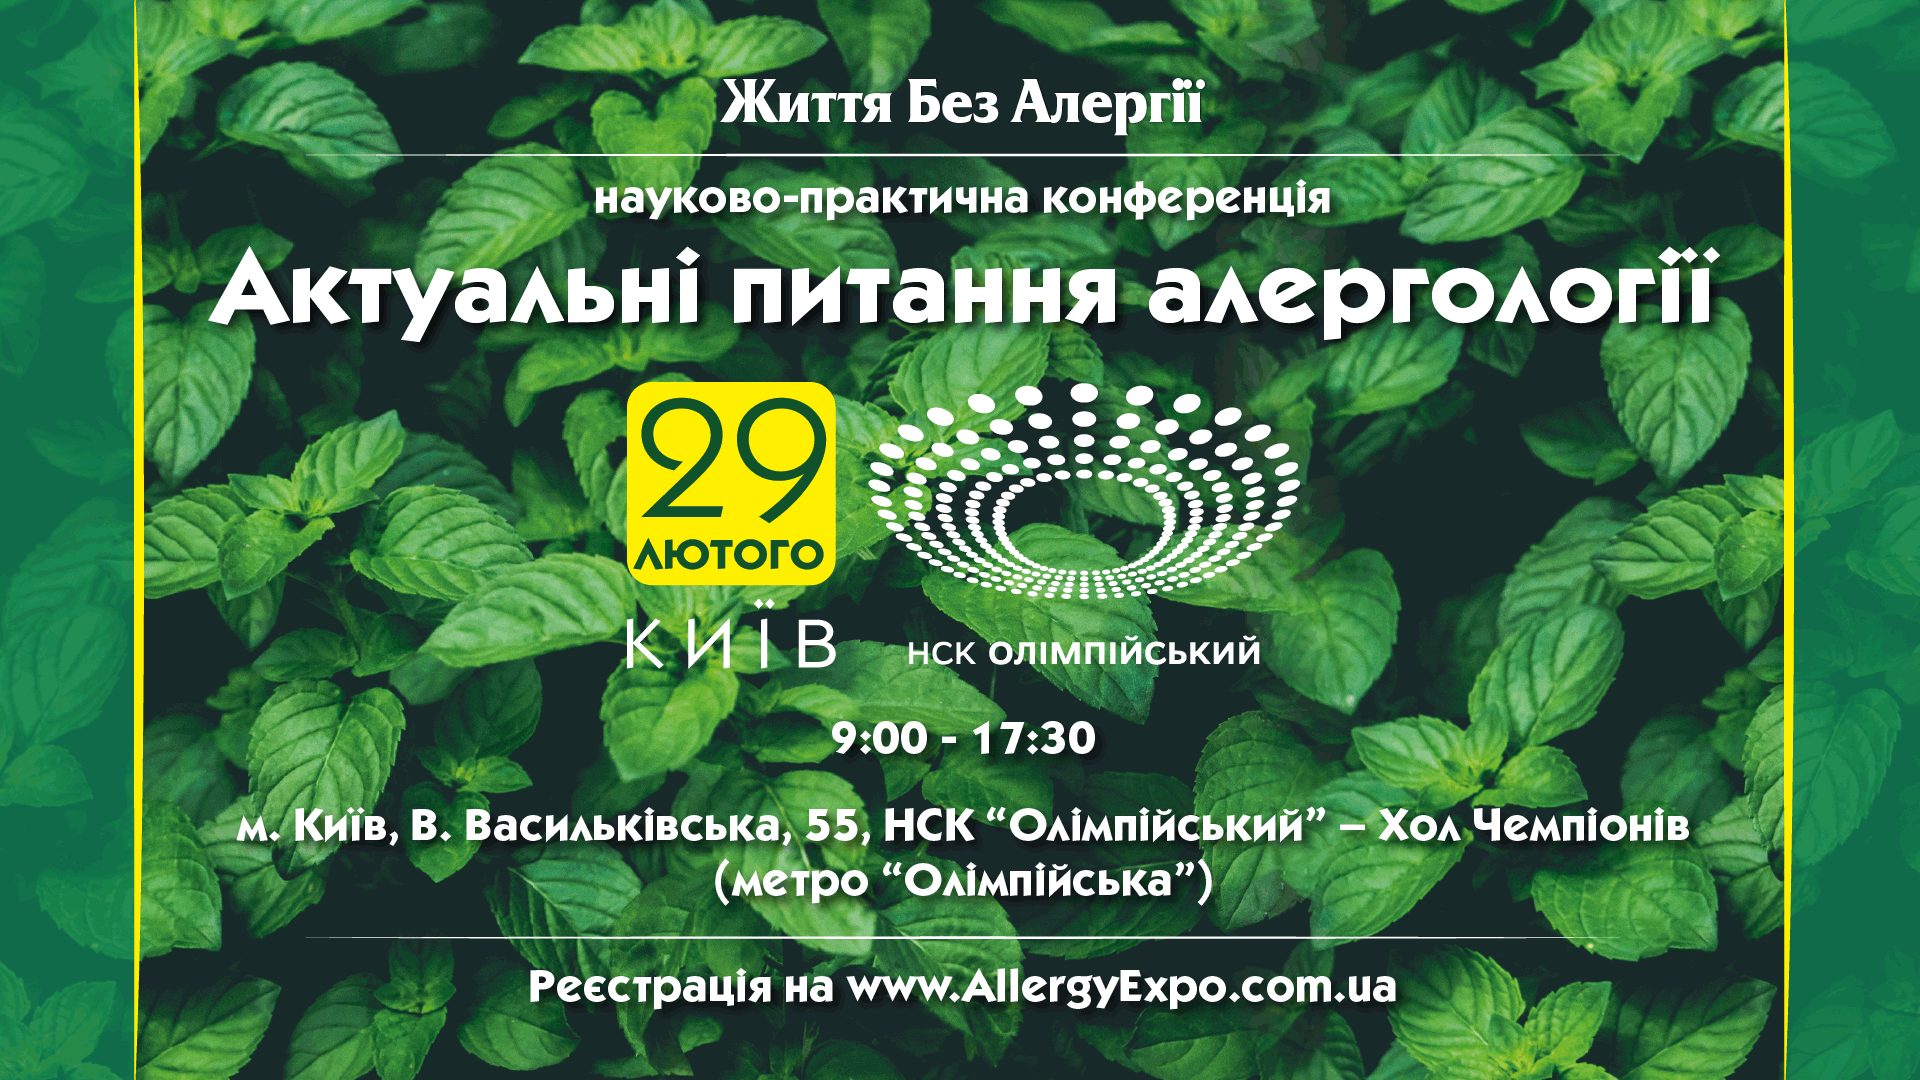 Науково-практична конференція «Актуальні питання алергології», м. Київ 29 лютого 2020 року